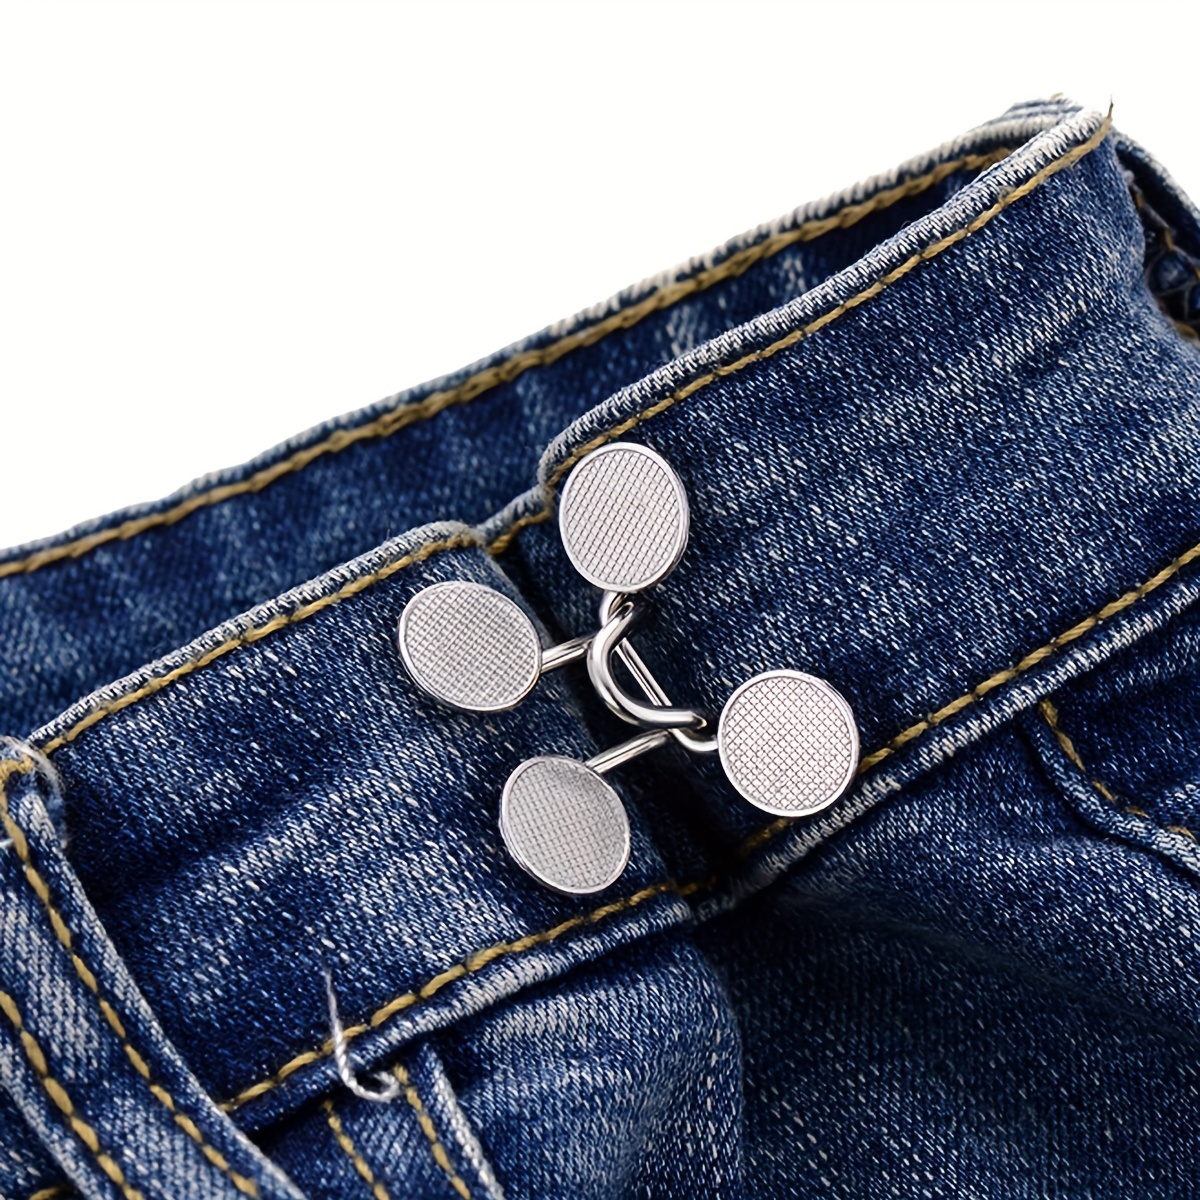 2 Sets Waist Cincher Artifact Jeans Waist Change Small Fixed